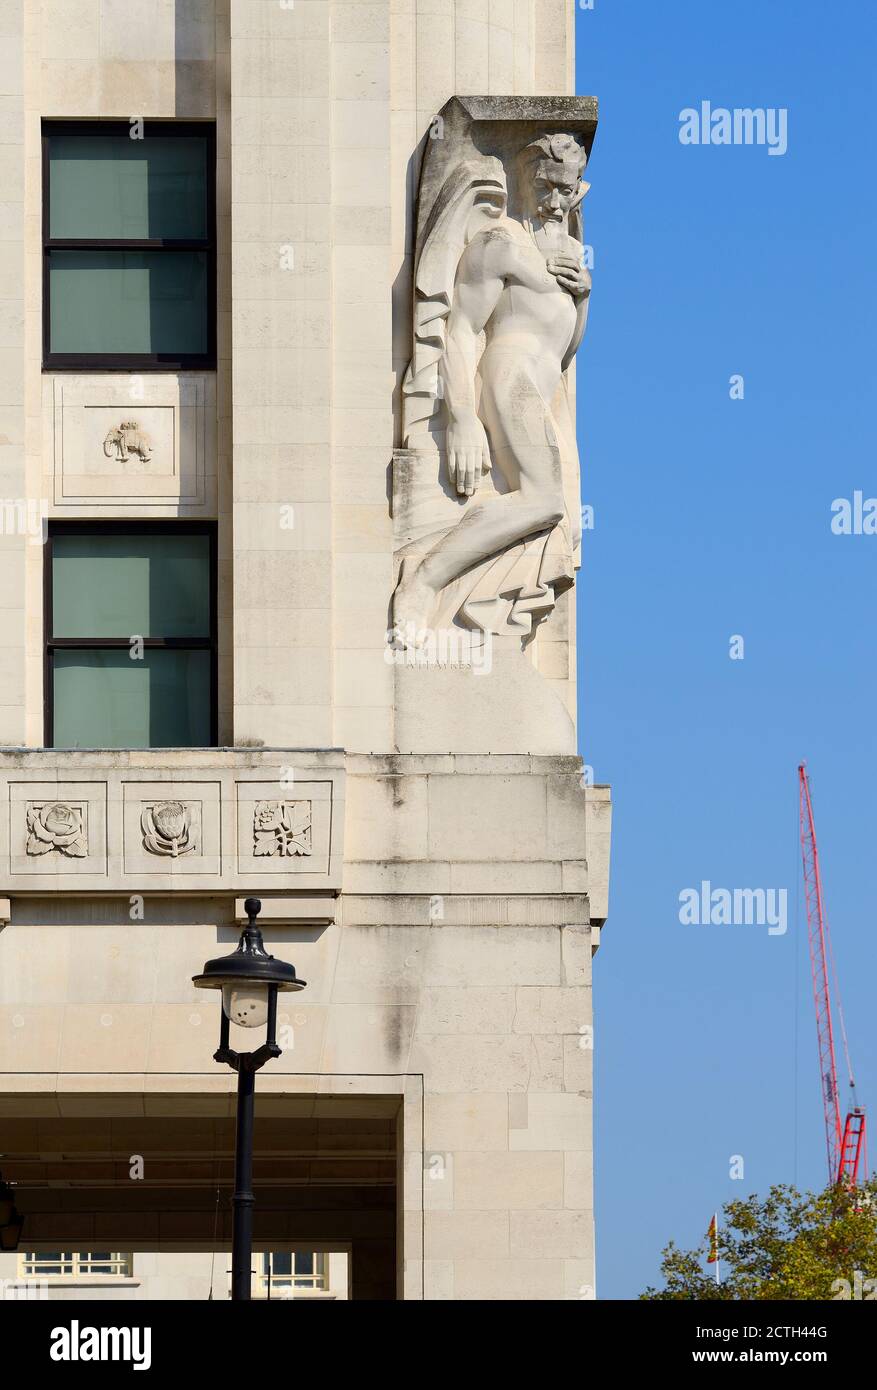 Londra, Inghilterra, Regno Unito. New Adelphi Building, Adam Street / Victoria Embankment. Art Deco (1938) pietra di Portland. Statua allegorica 'contemplazione' (da UN Foto Stock